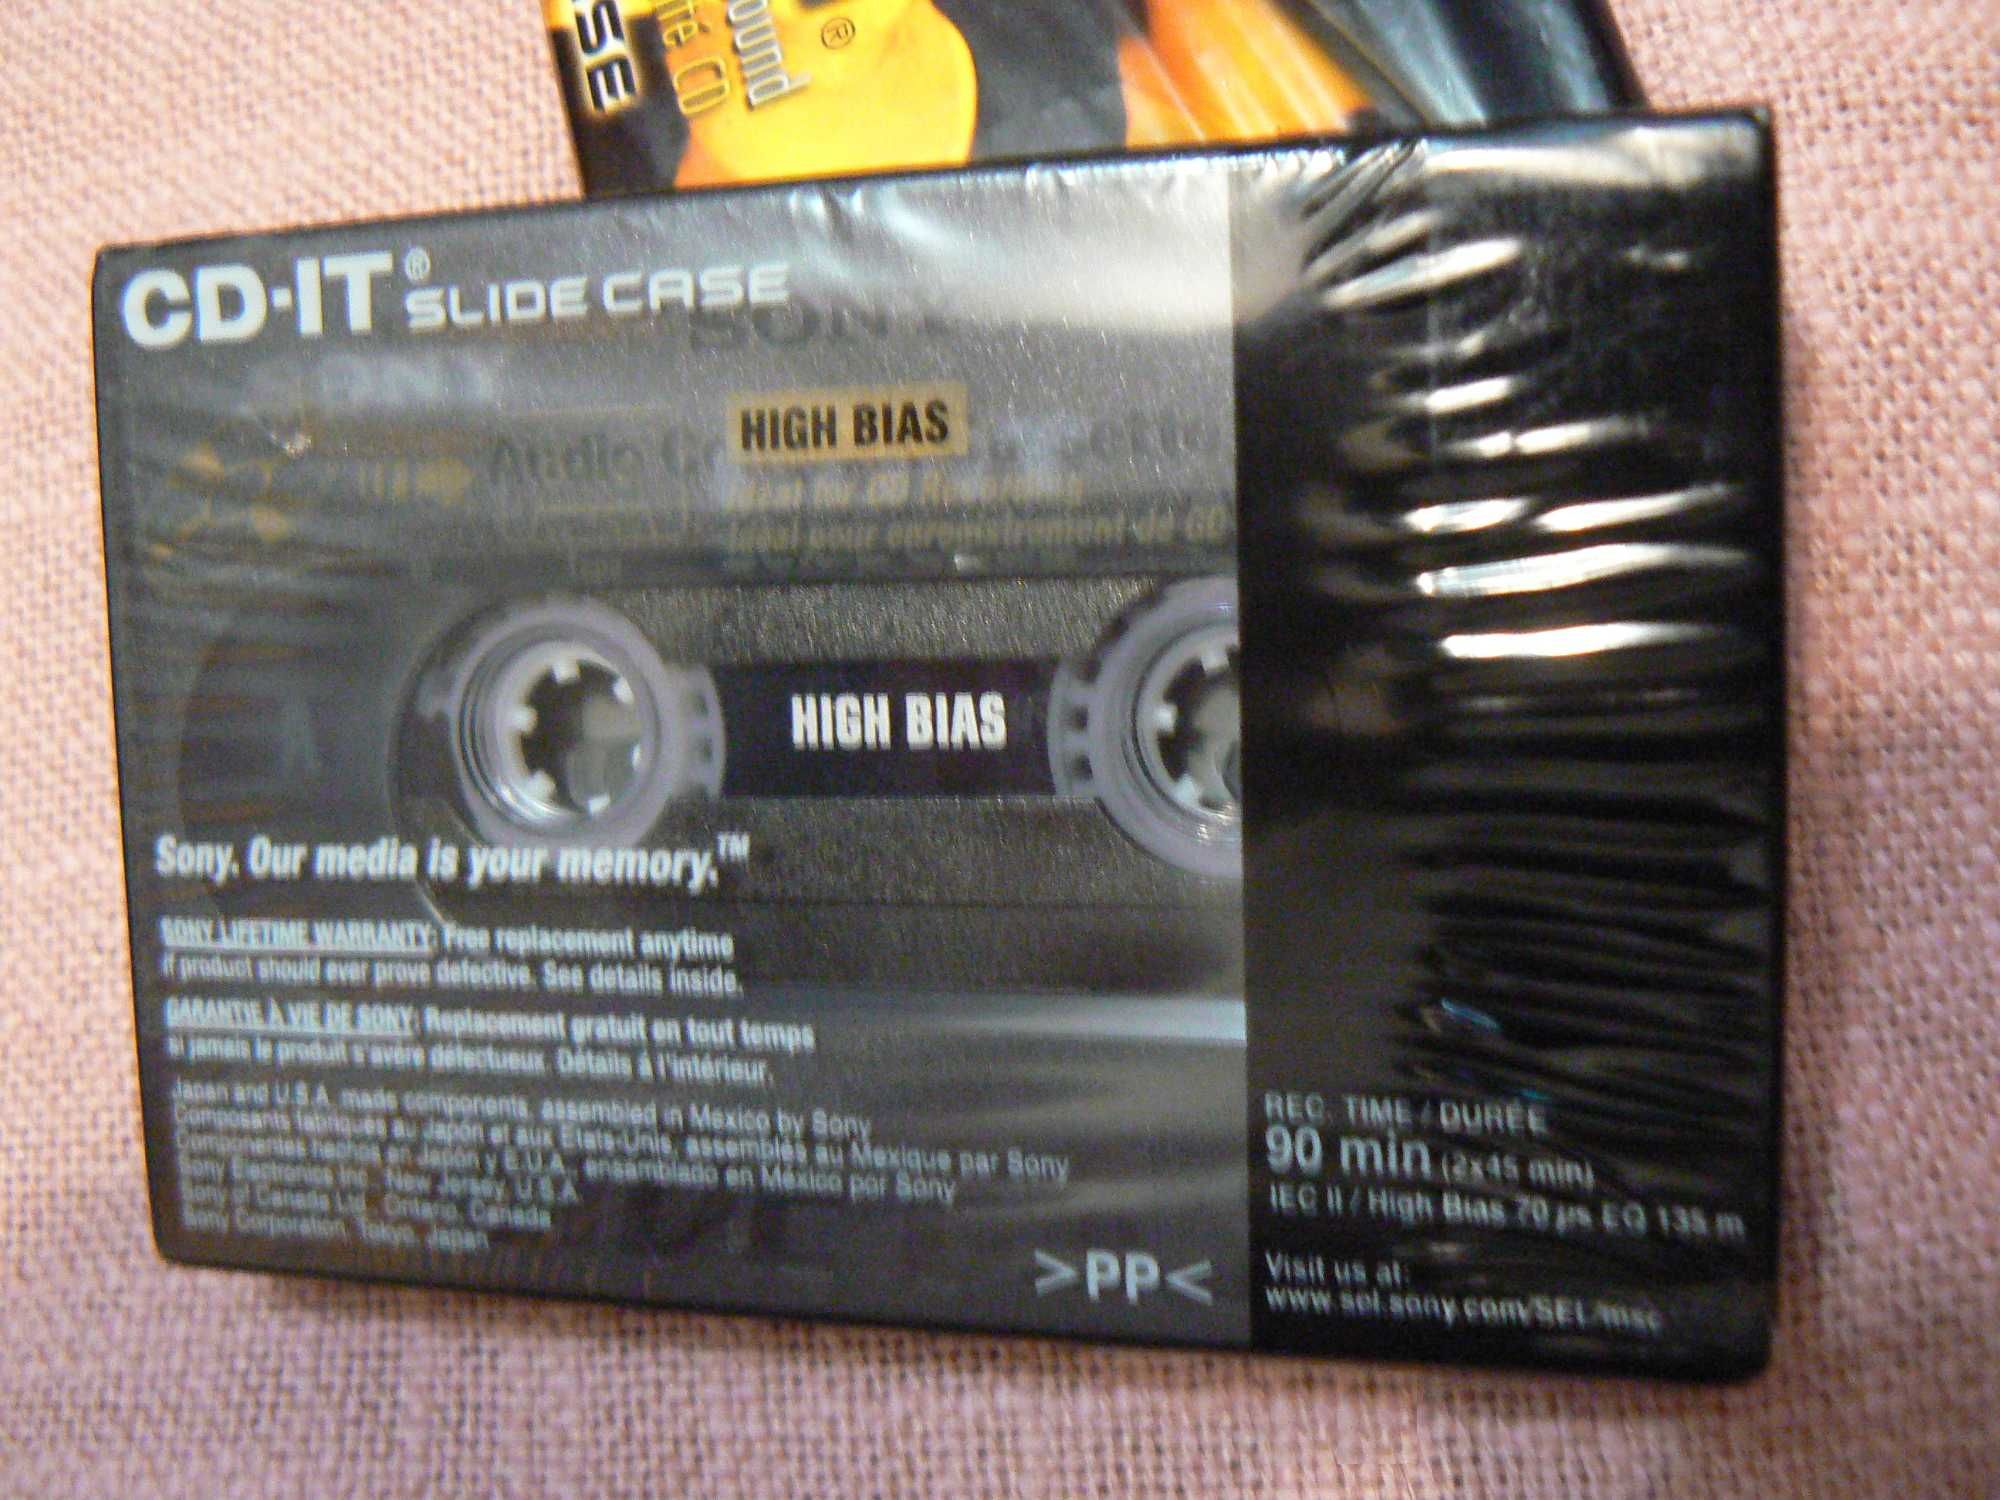 Касета Аудіо Sony CD-IT 90, вир Японія-Мексика, хром, тип 2, 3 шт